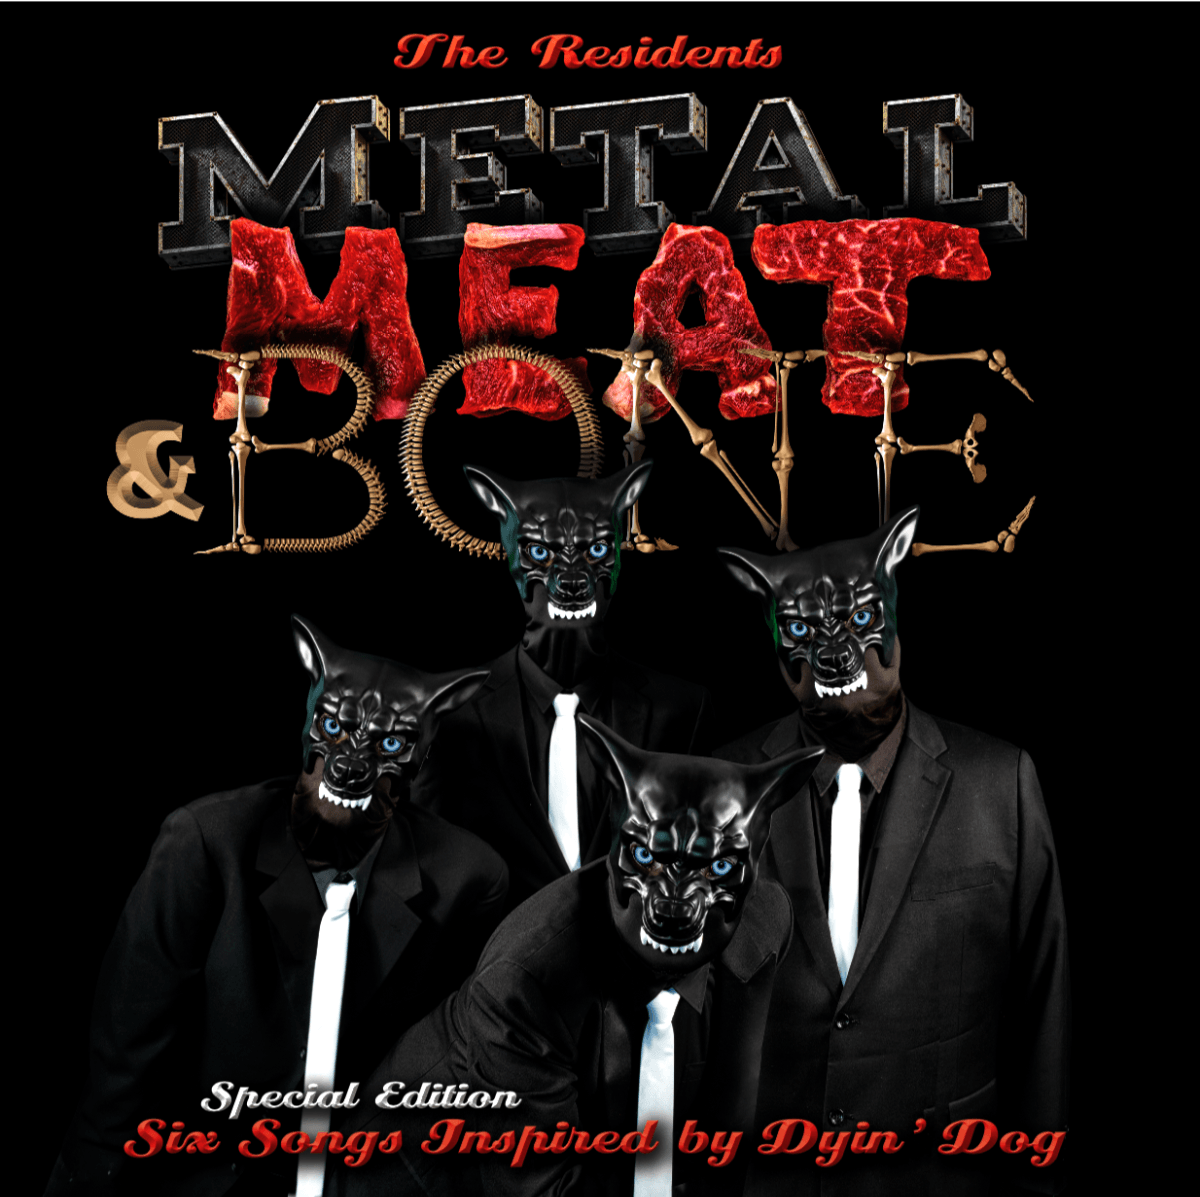 PR-035 - The Residents – Metal, Meat & Bone - black vinyl - LP